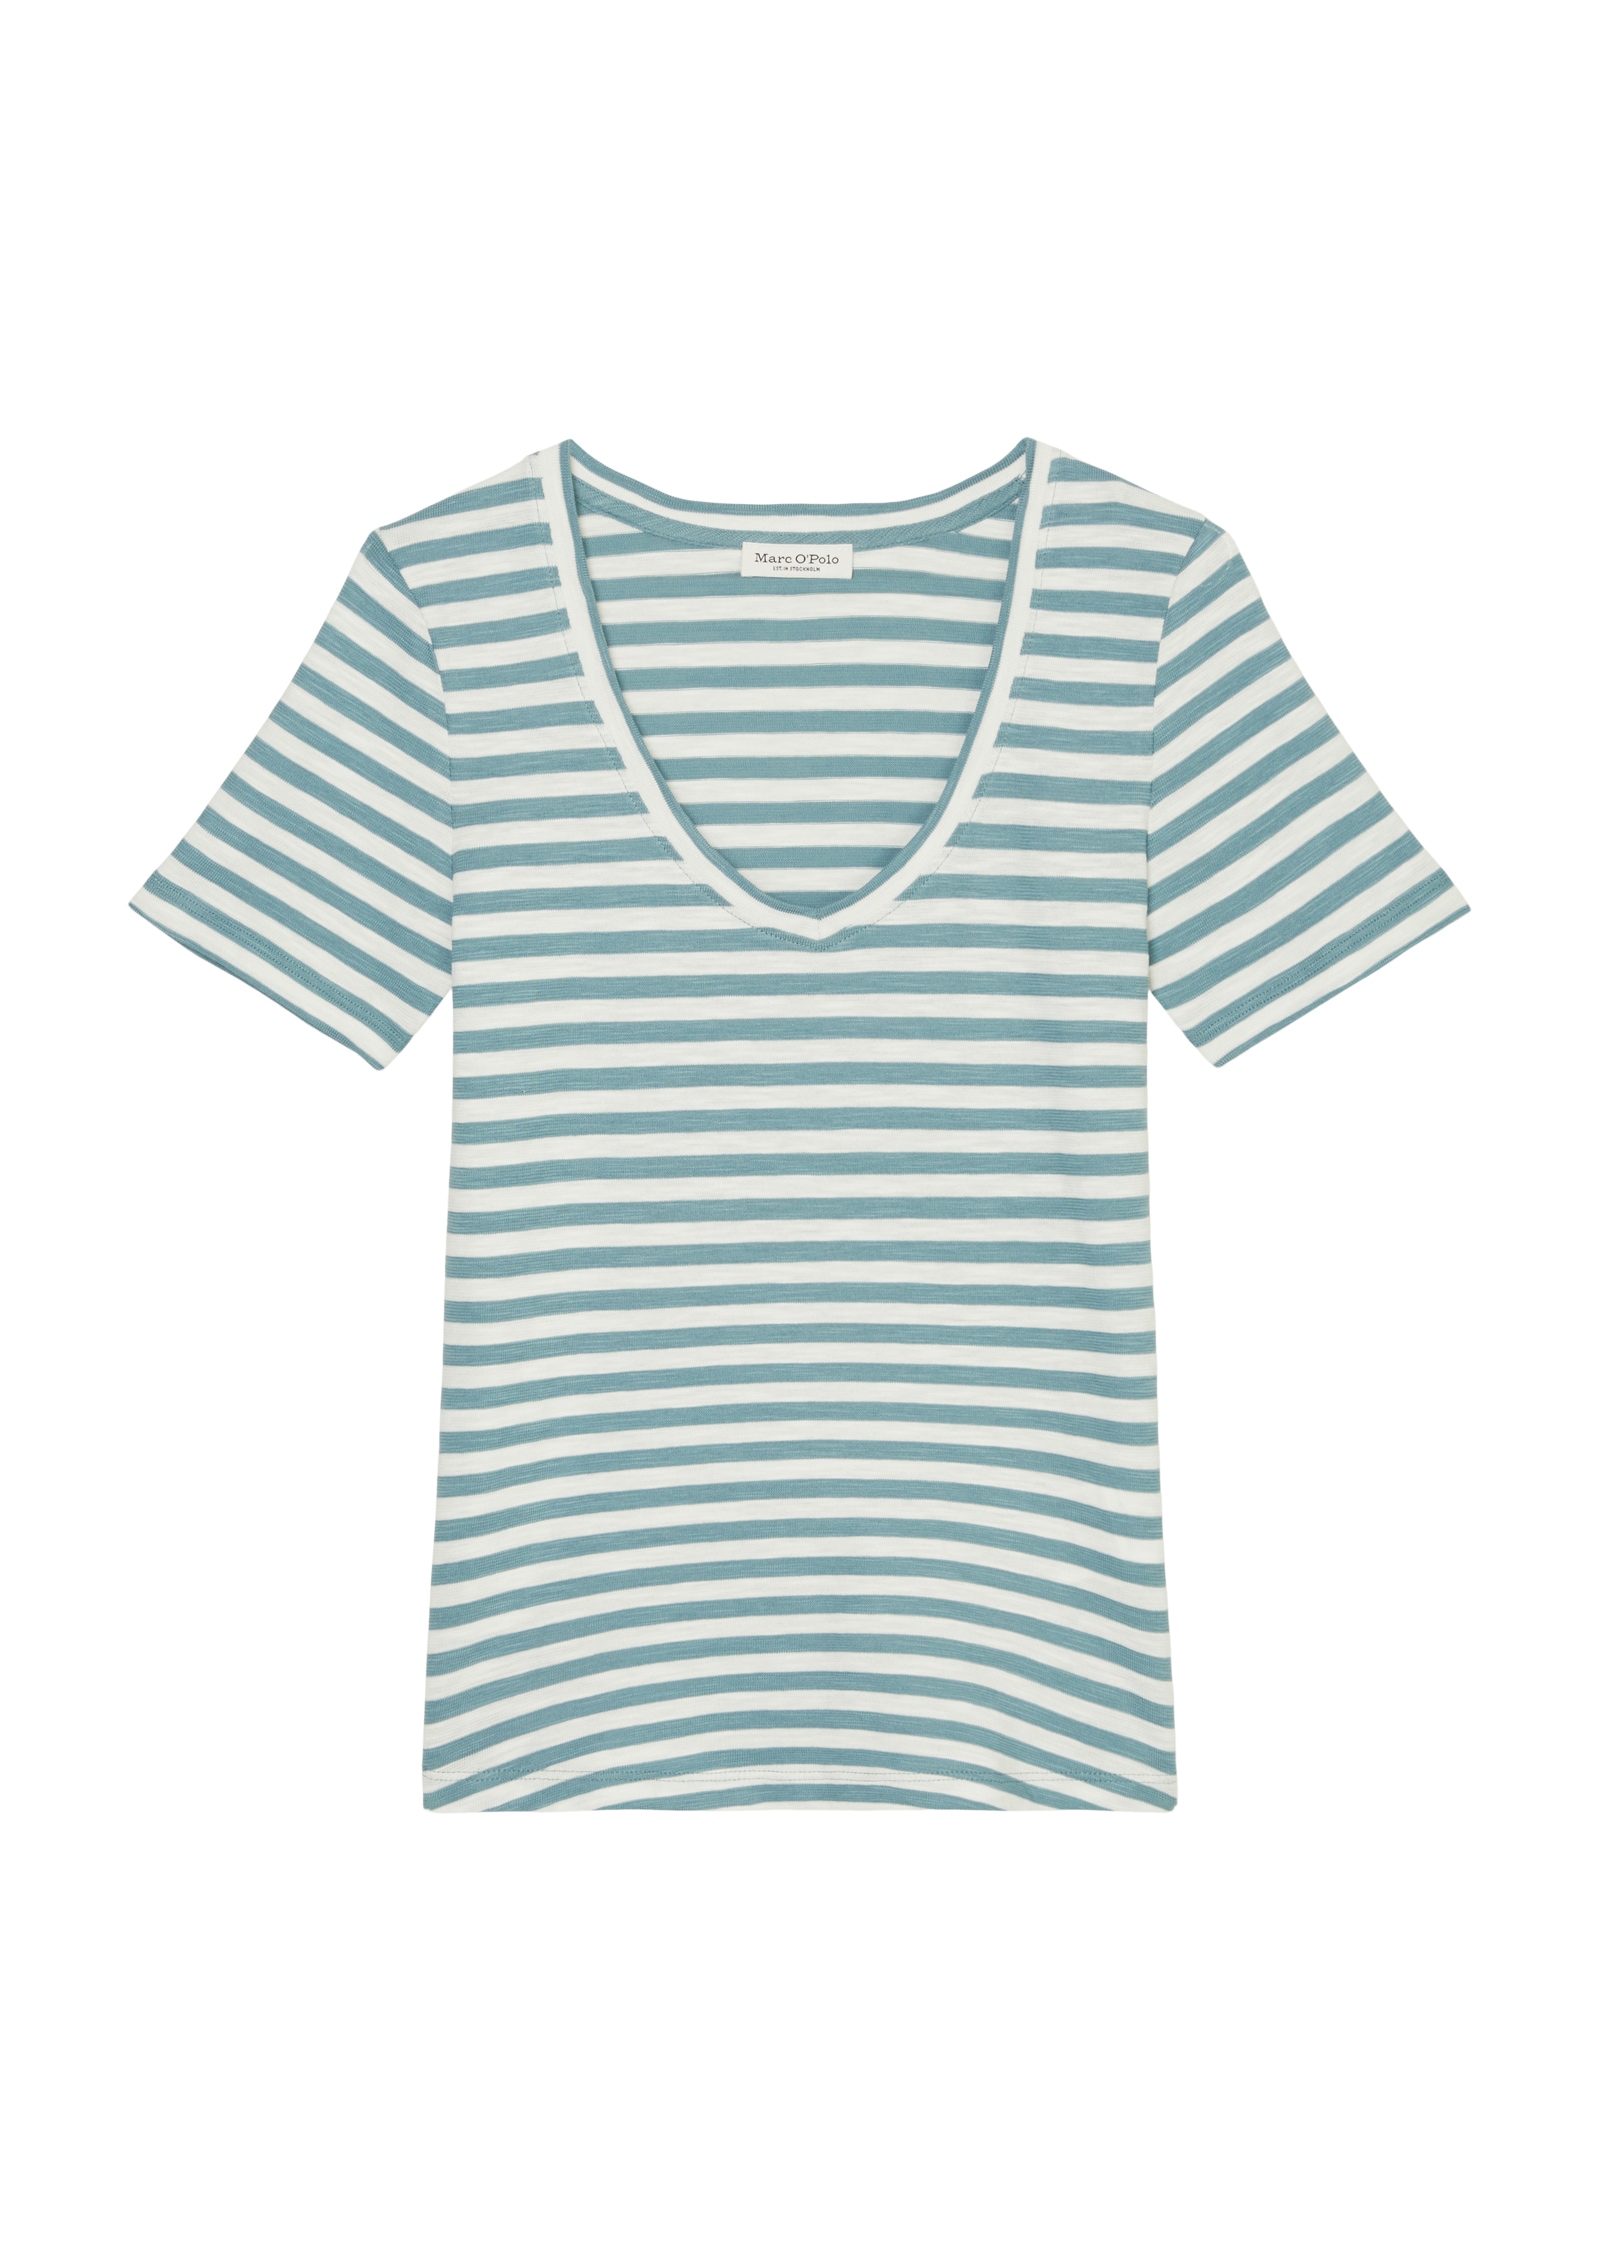 Marc O'Polo T-Shirt, abgerundeter V-neck, locker gewirkter Slub-Jersey-Qualität